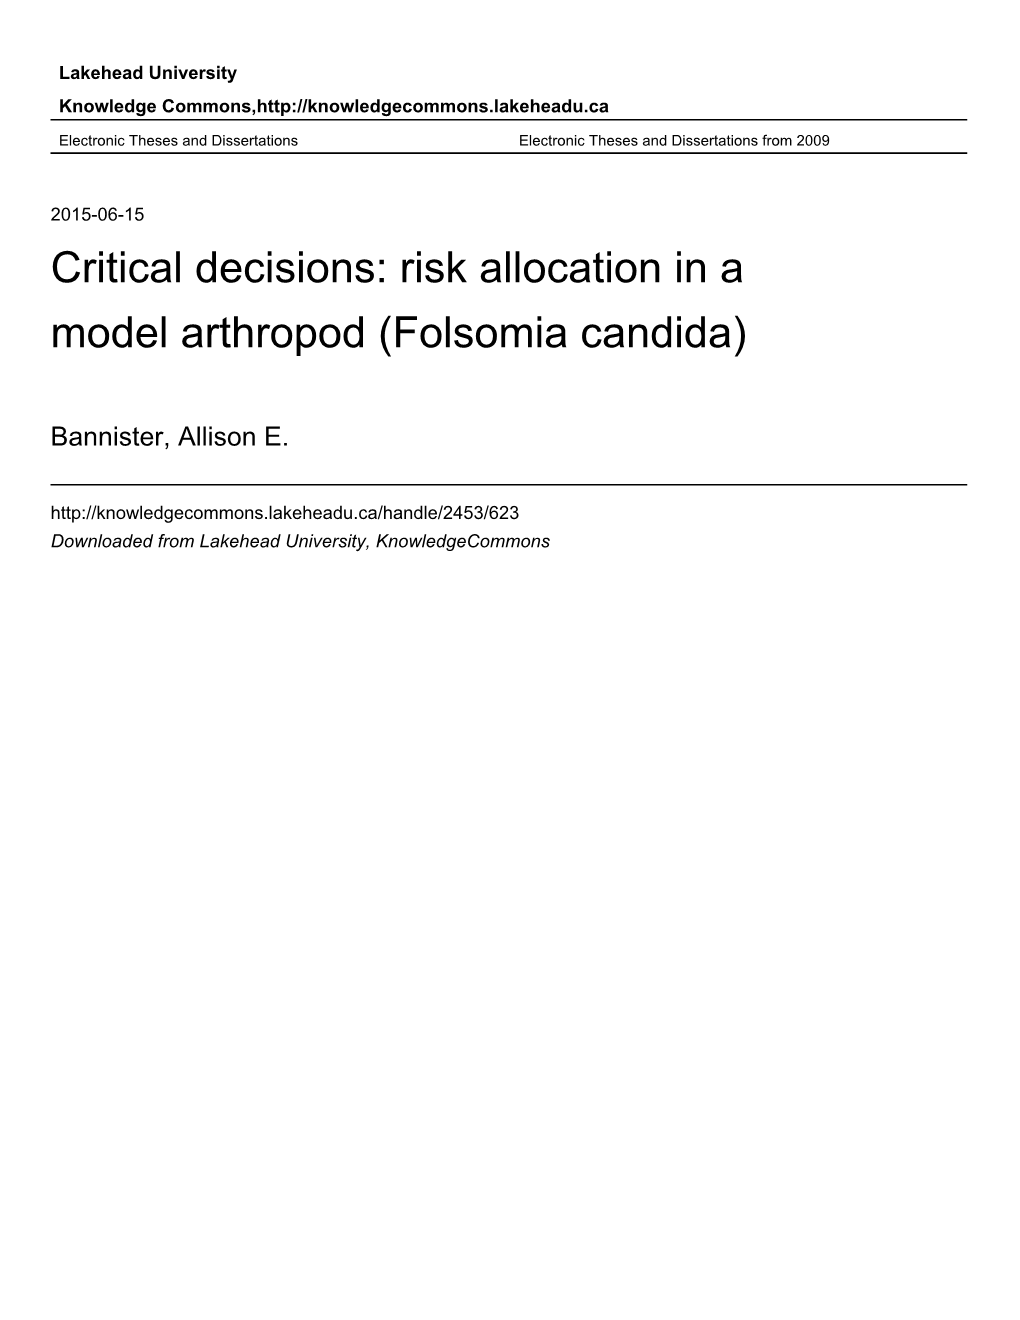 Critical Decisions: Risk Allocation in a Model Arthropod (Folsomia Candida)